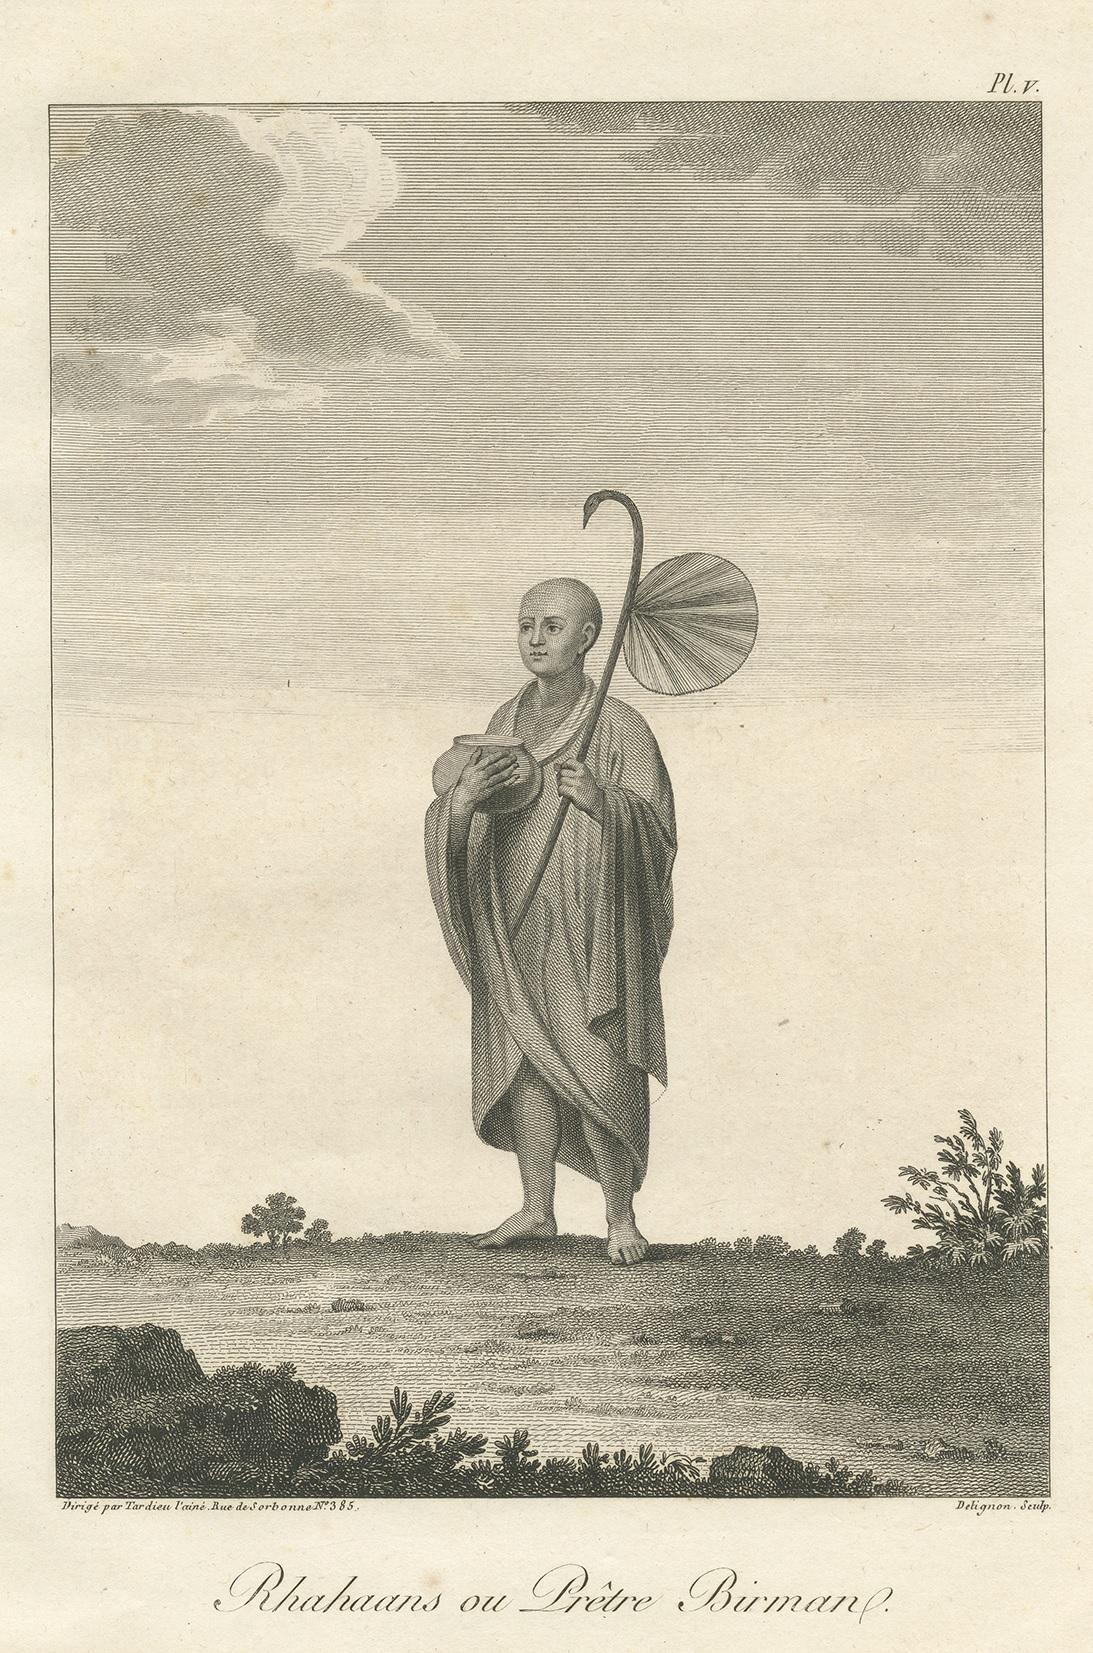 Antique print titled 'Rhahaans ou Prêtre Birman'. Print of a Burmese Priest. This print originates from 'Relation de l'Ambassade Anglaise, envoyée en 1795 dans le Royaume d'Ava, ou l'Empire des Birmans' by M. Symes. Published 1800.